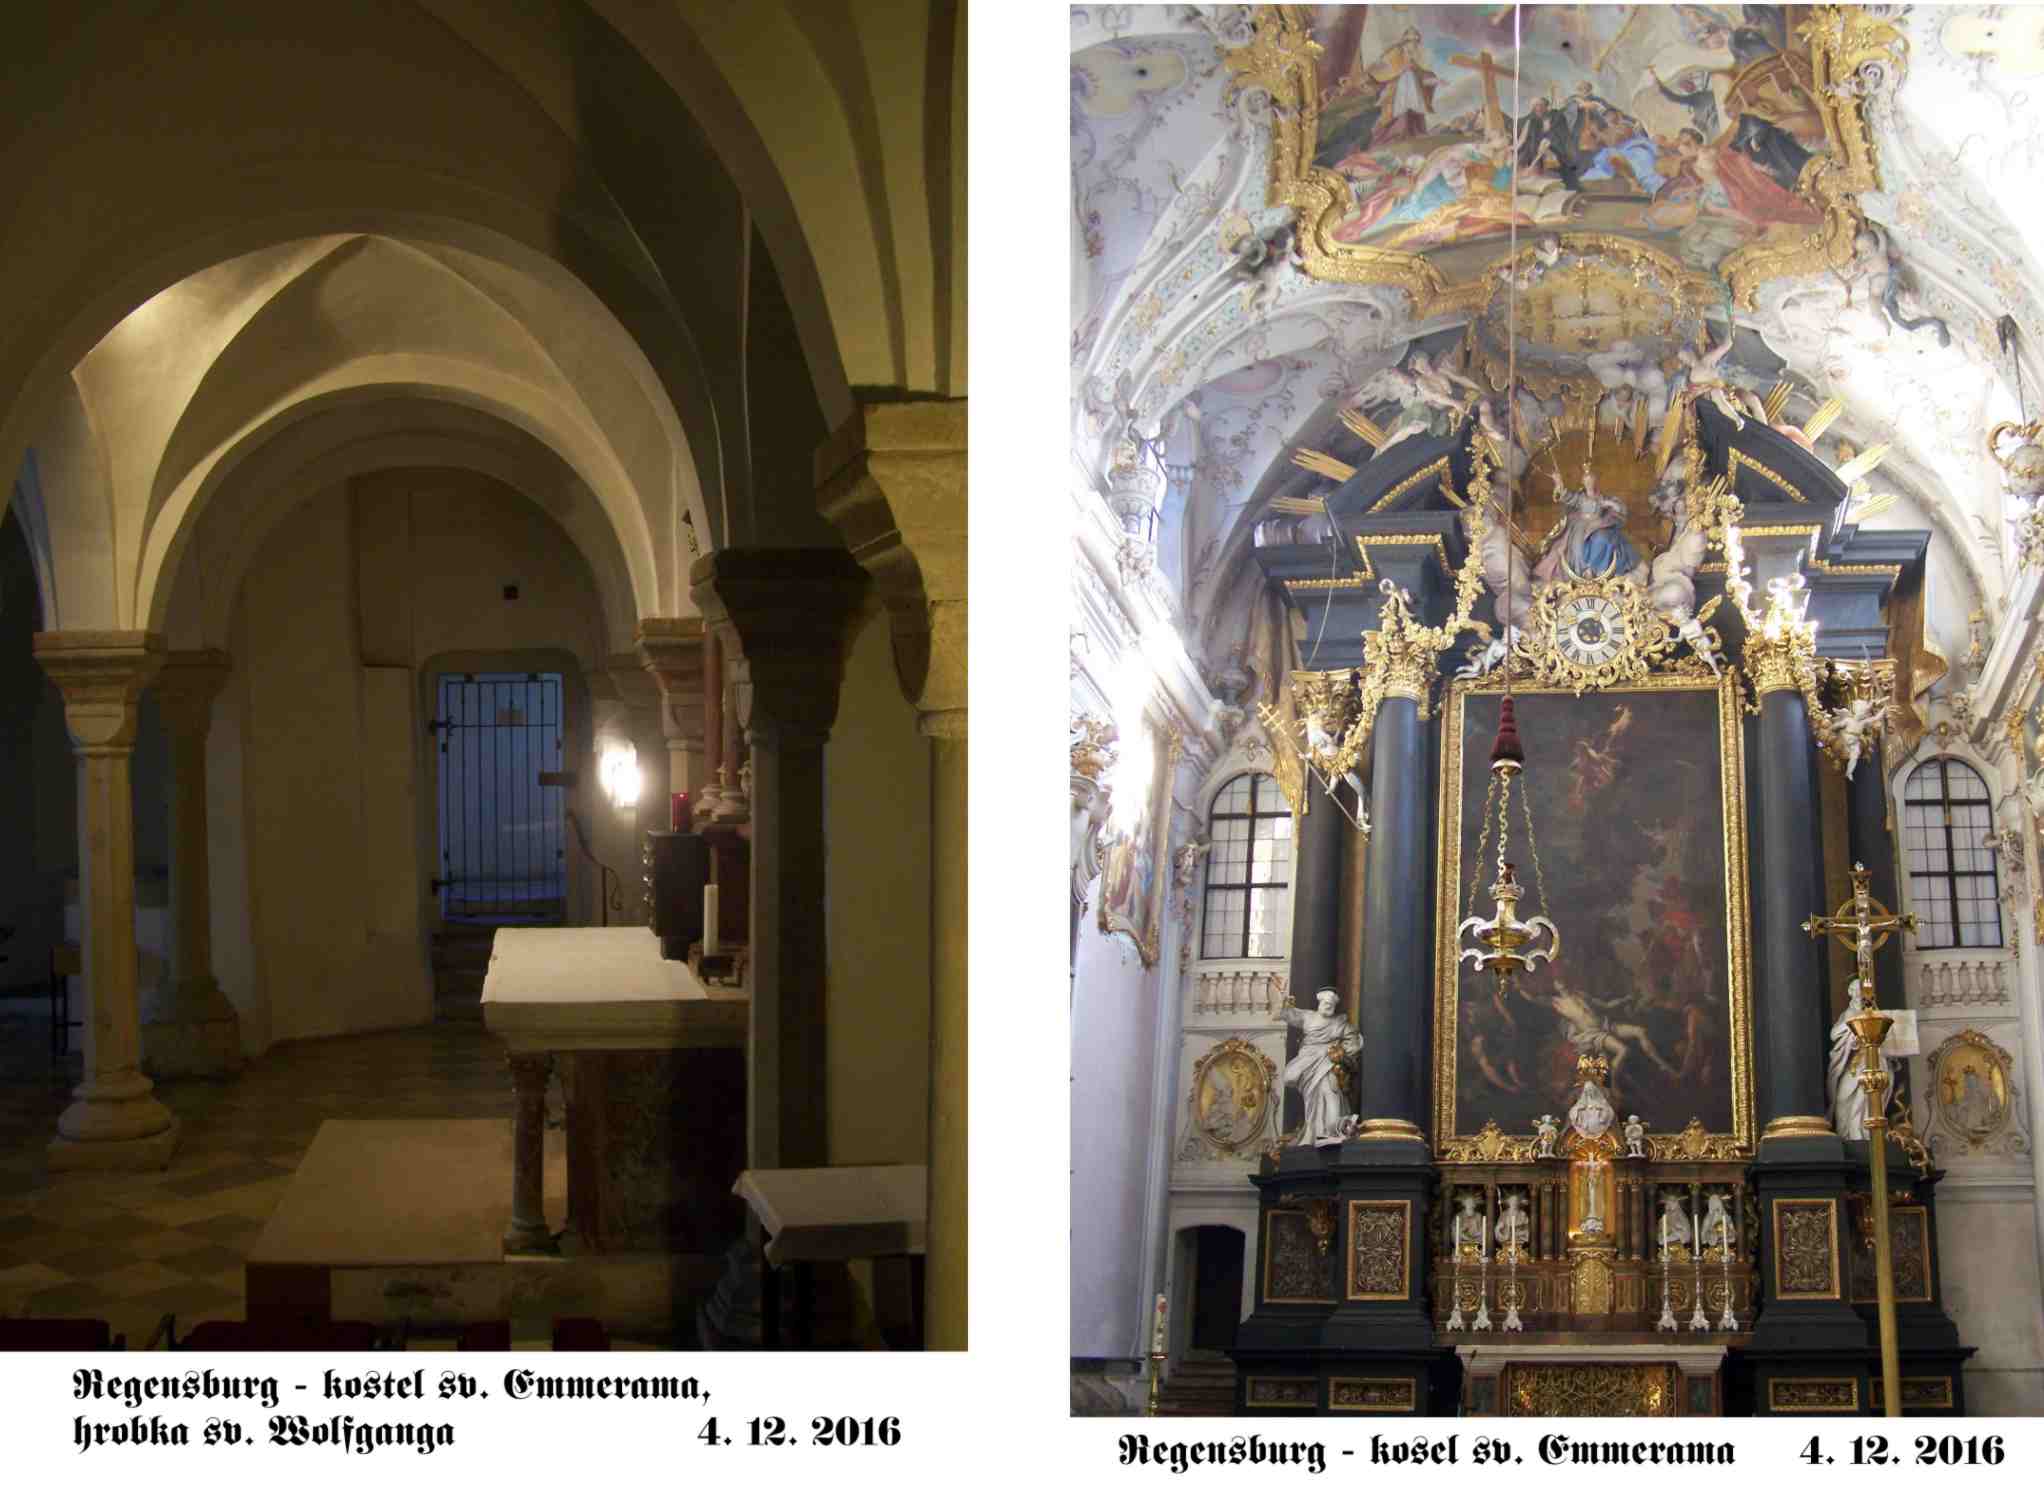 Oltář s hodiny a hrobka sv. Wolfganga